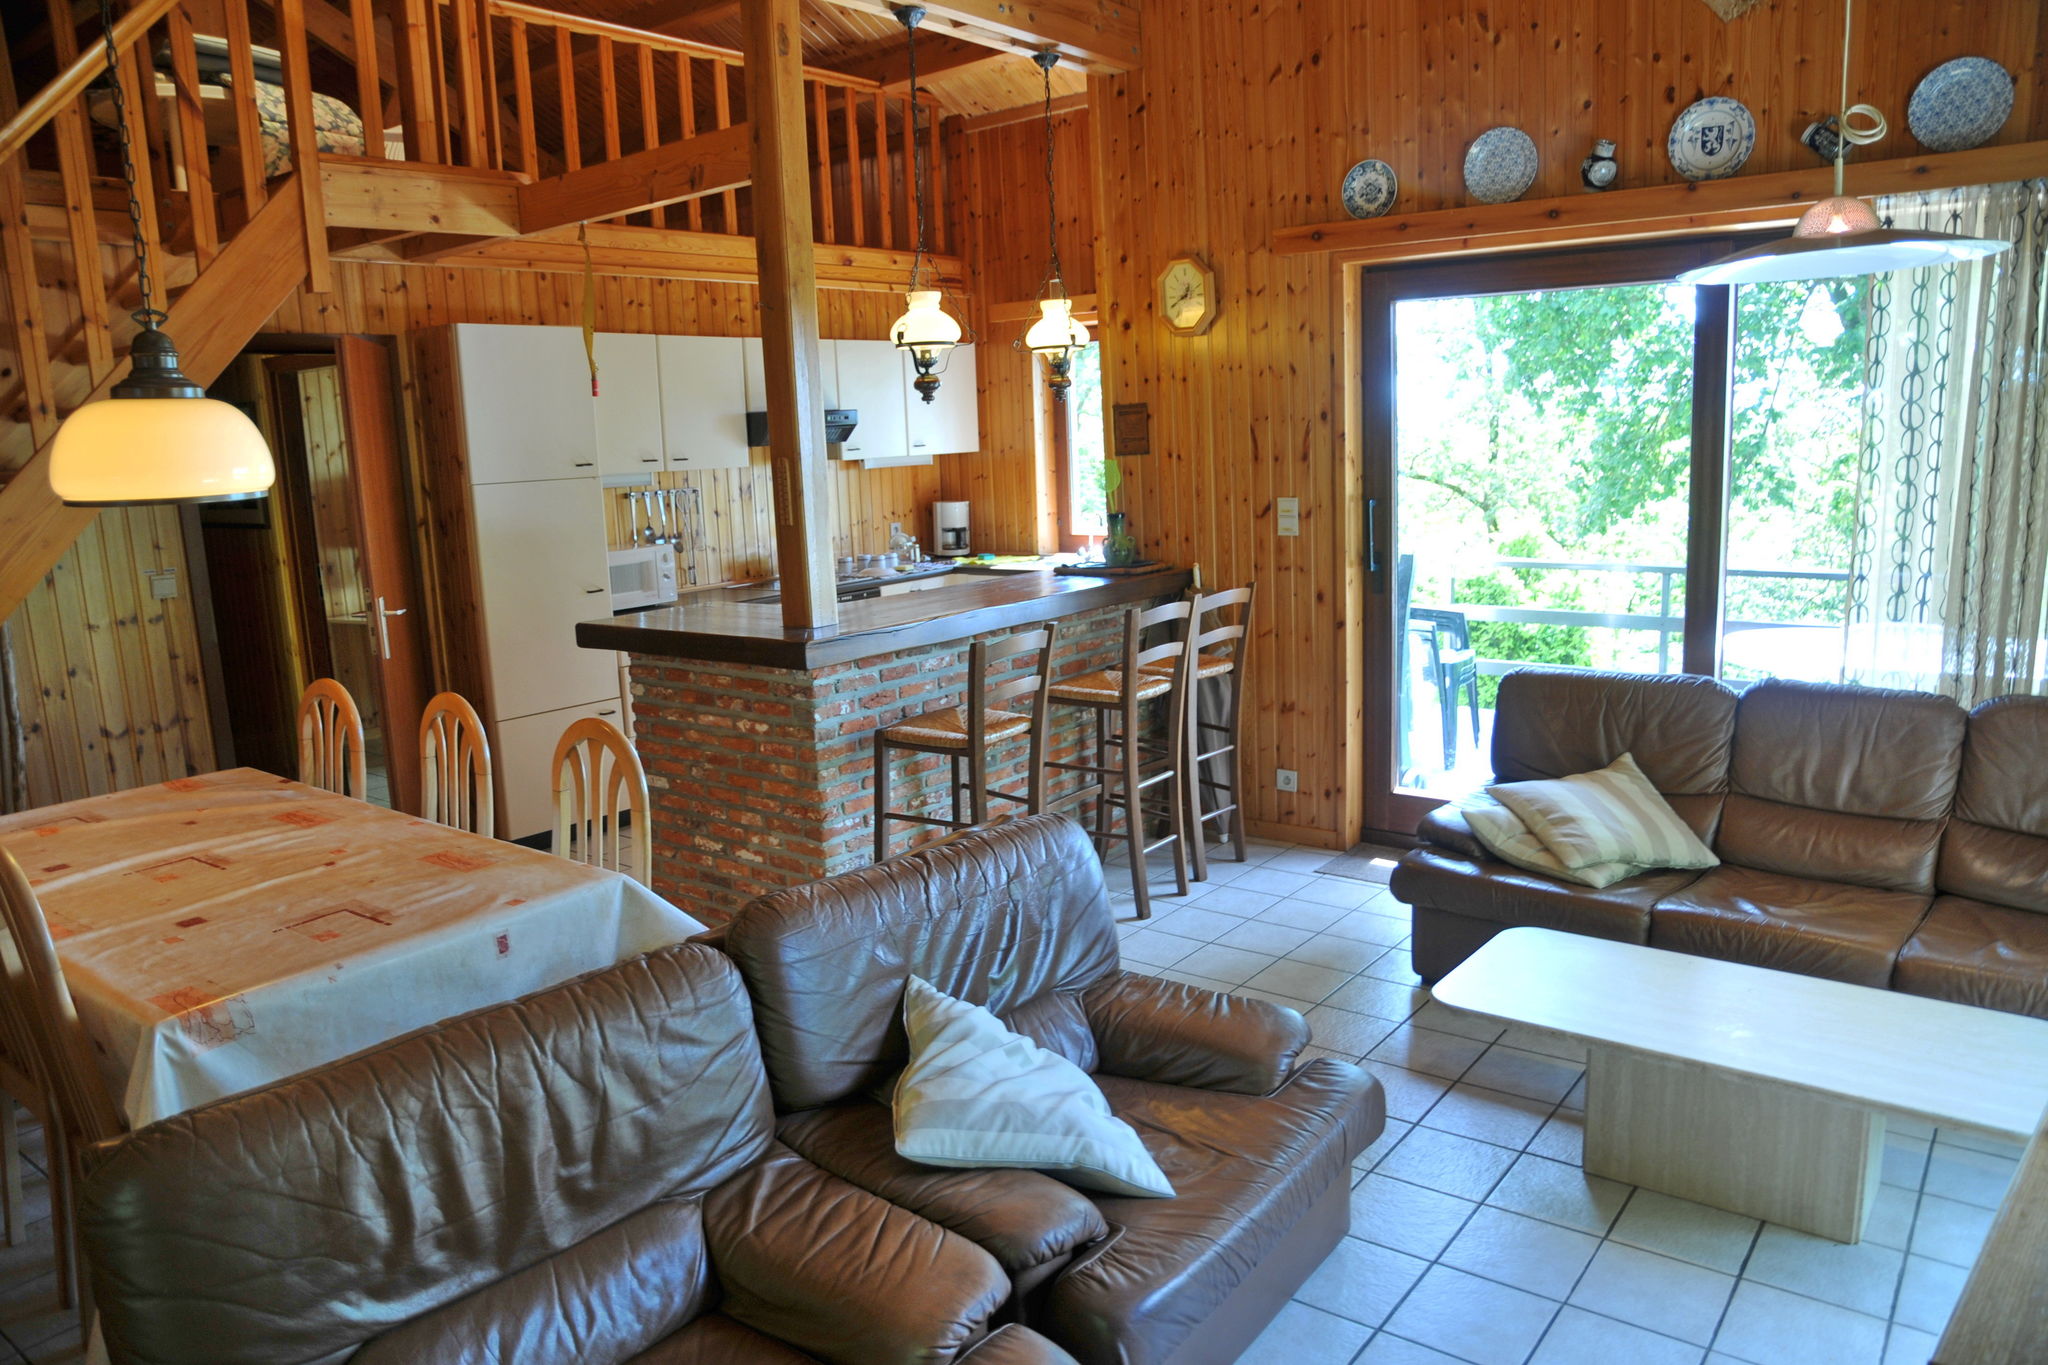 Maison de vacances confortable à Durbuy avec barbecue